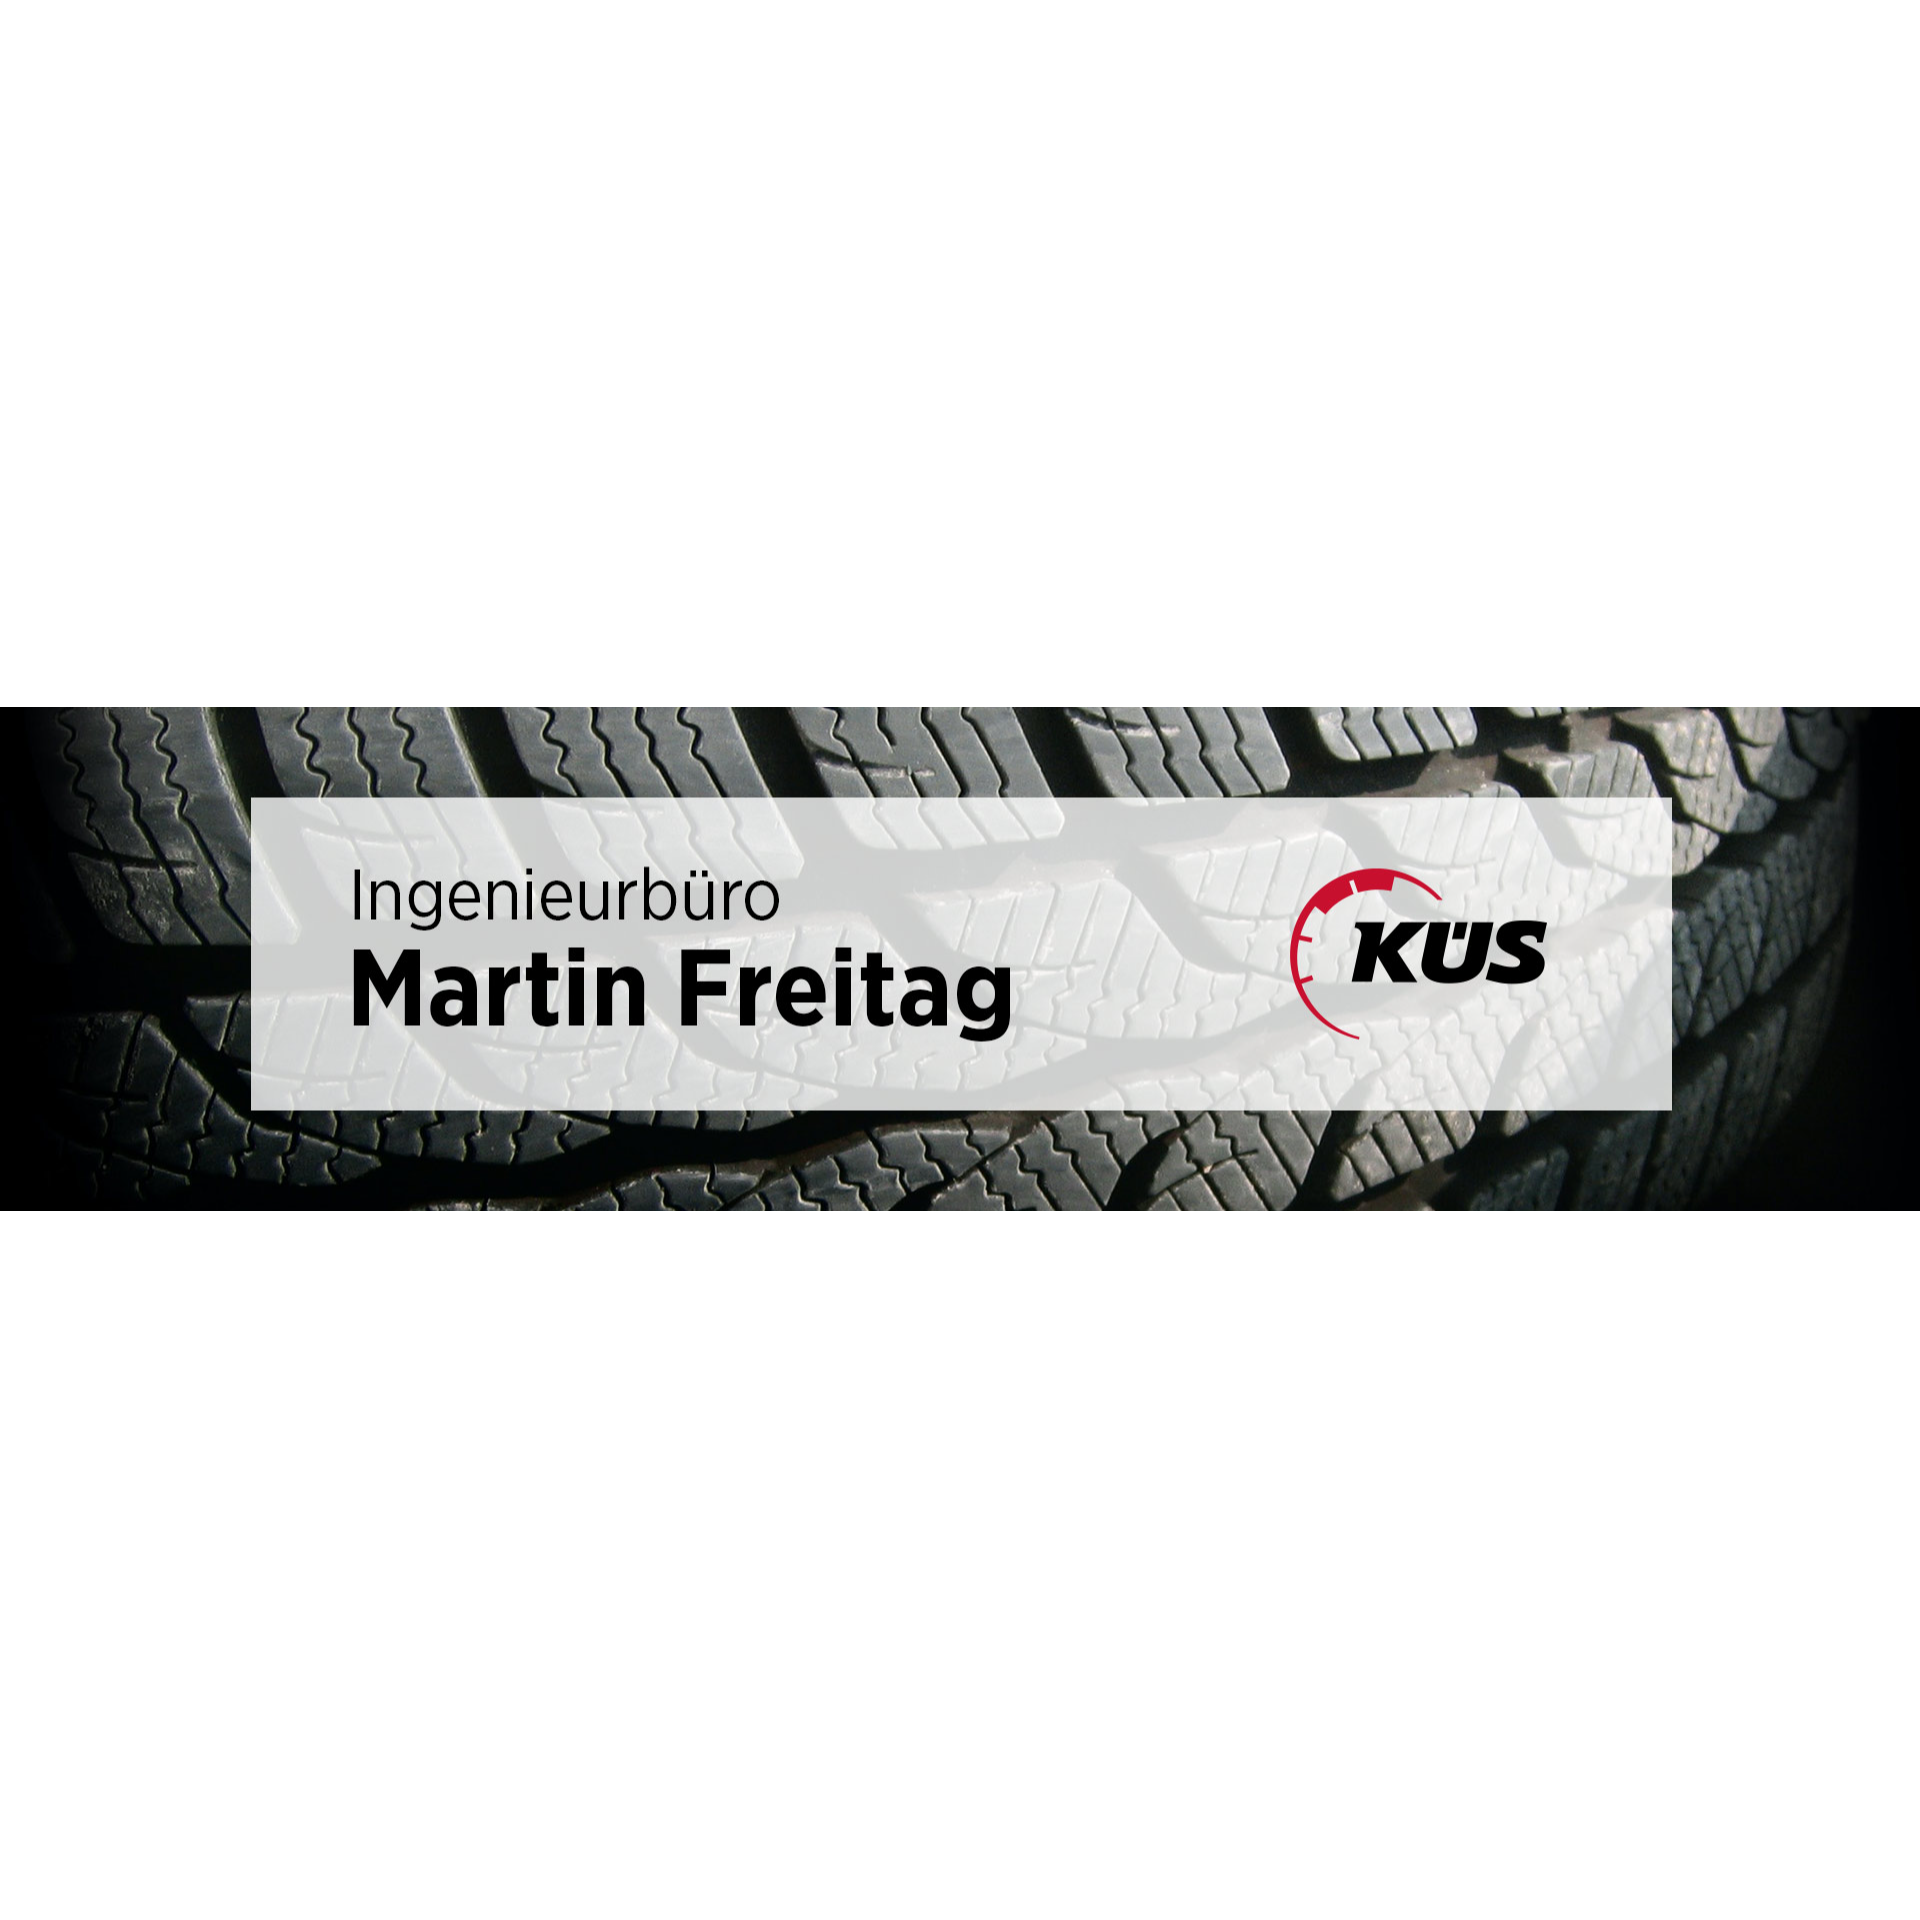 Ingenieurbüro Martin Freitag in Bergisch Gladbach